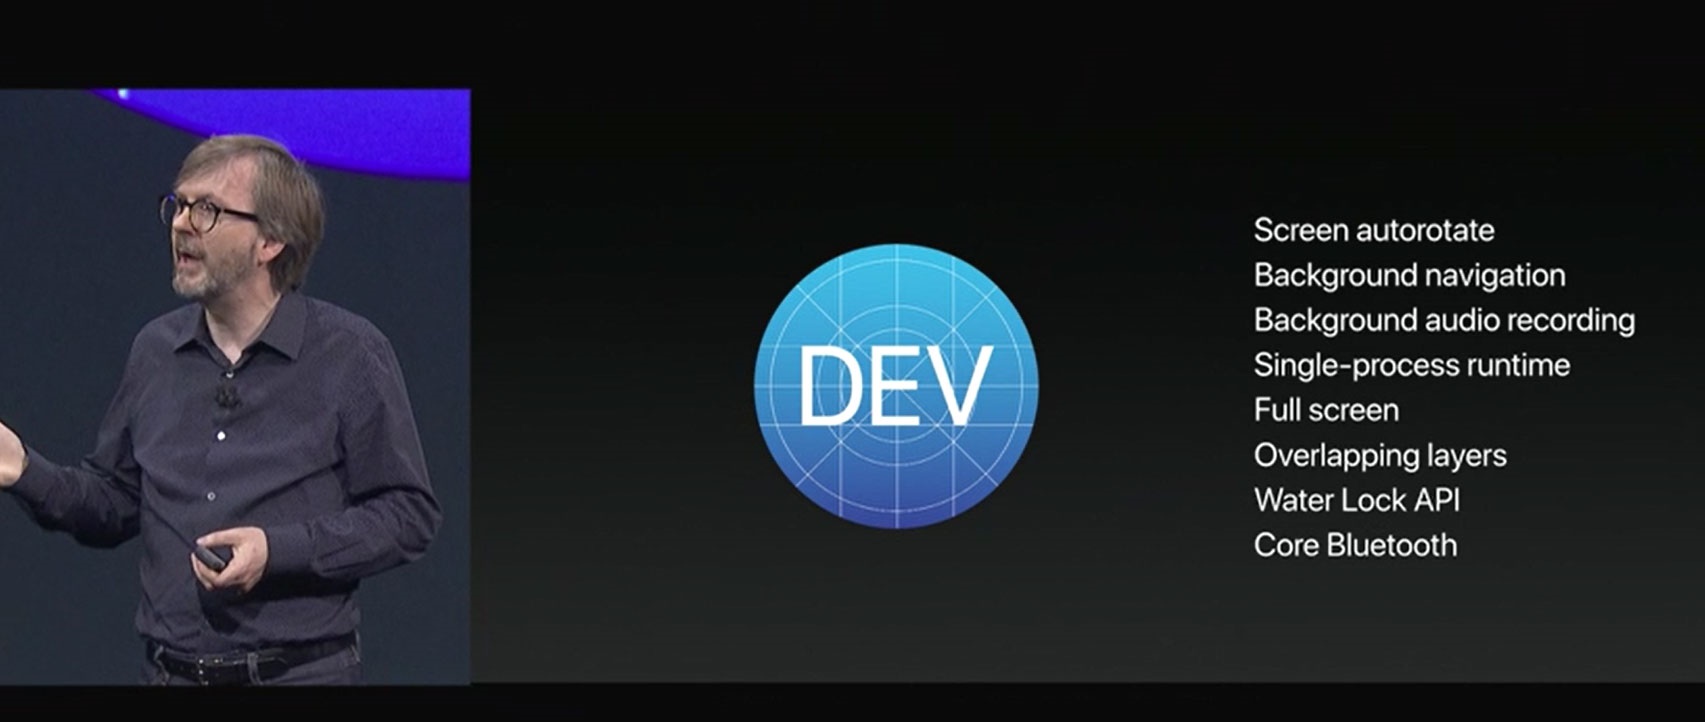 رونمایی از سیستم عامل اپل واچ او اس 4 در کنفرانس WWDC 2017